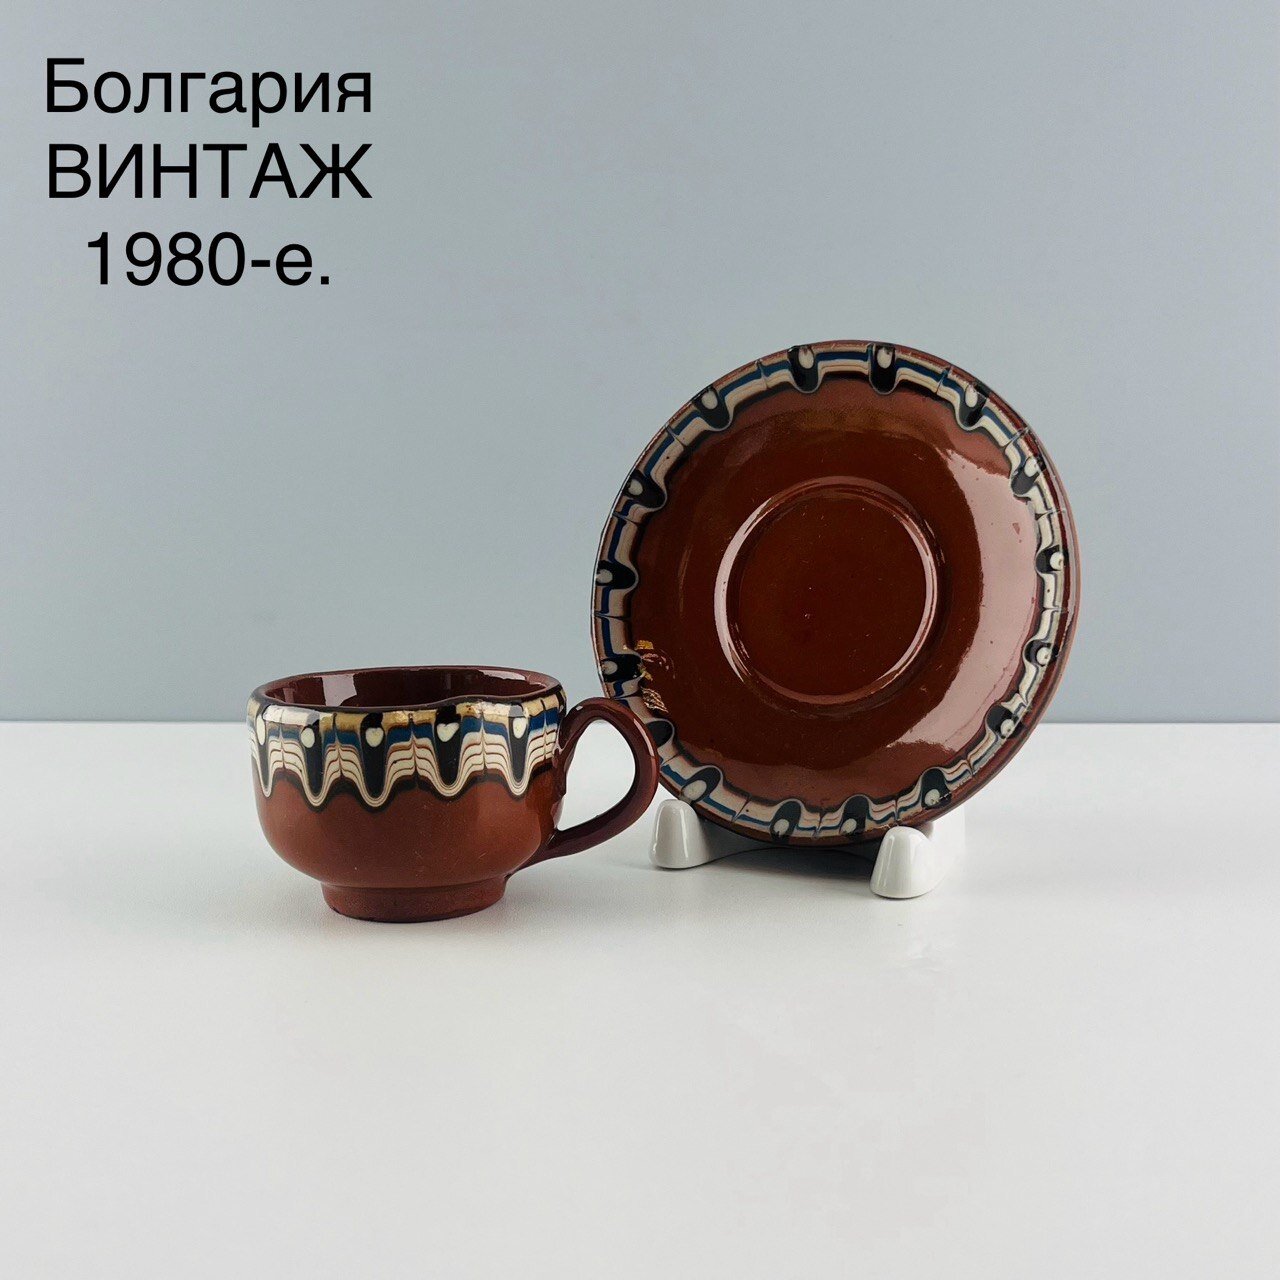 Винтажная кофейная пара "Солнечный орнамент". Керамика, троянска шарка. Болгария, 1980-е.